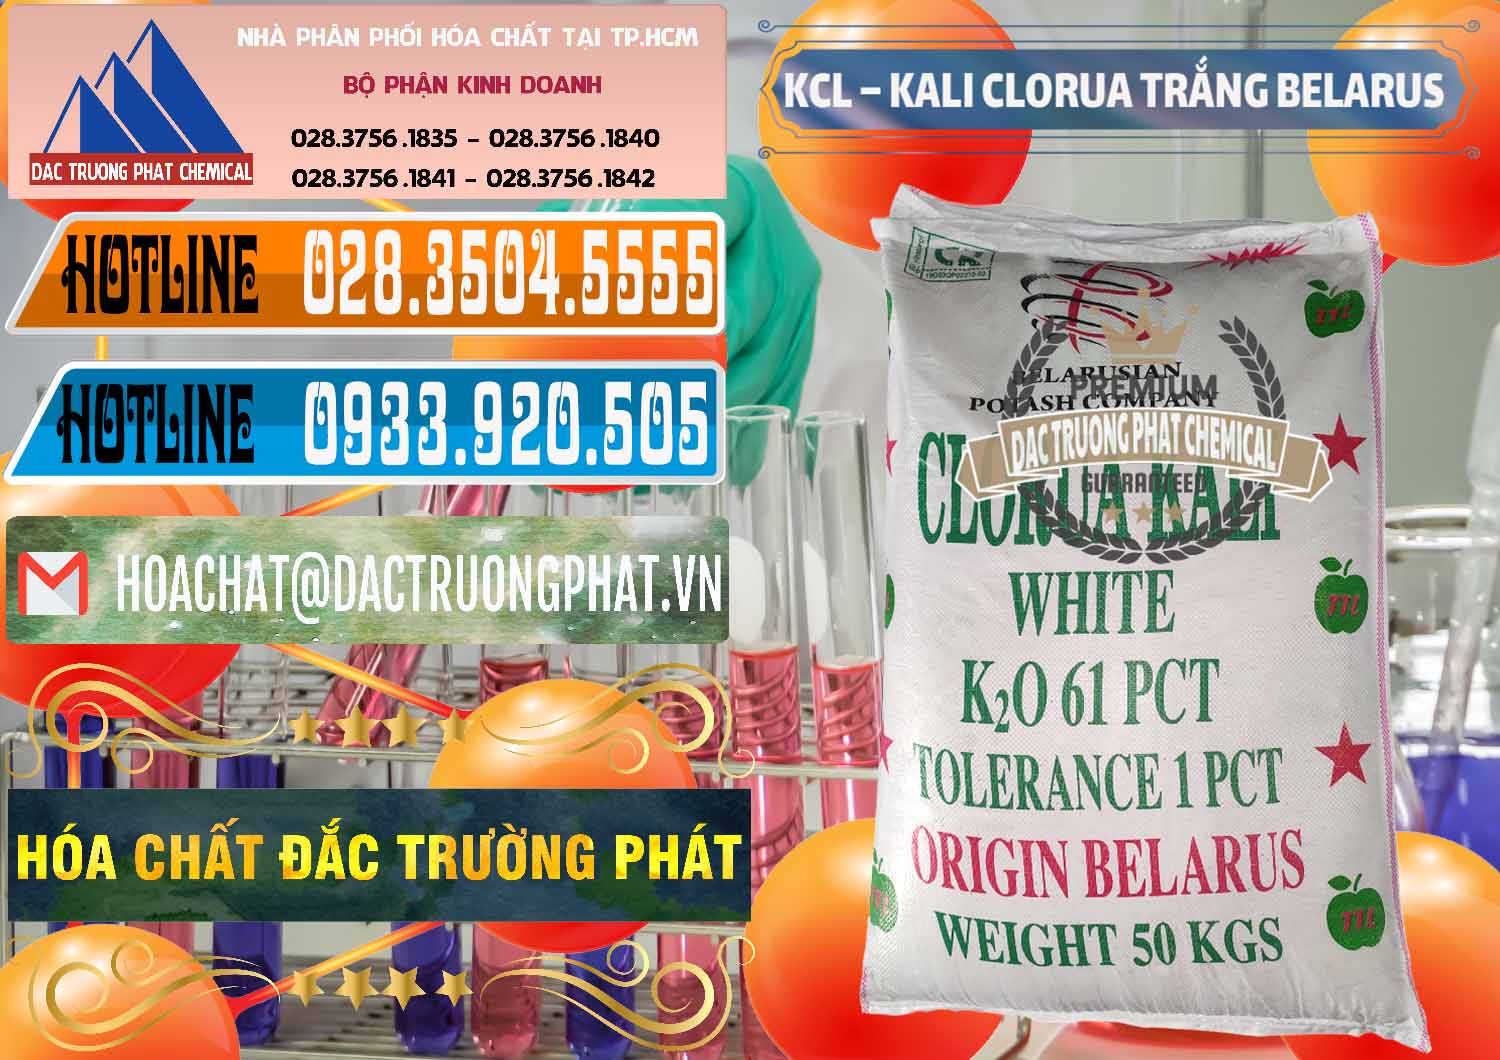 Nơi bán - cung ứng KCL – Kali Clorua Trắng Belarus - 0085 - Cty kinh doanh ( phân phối ) hóa chất tại TP.HCM - stmp.net